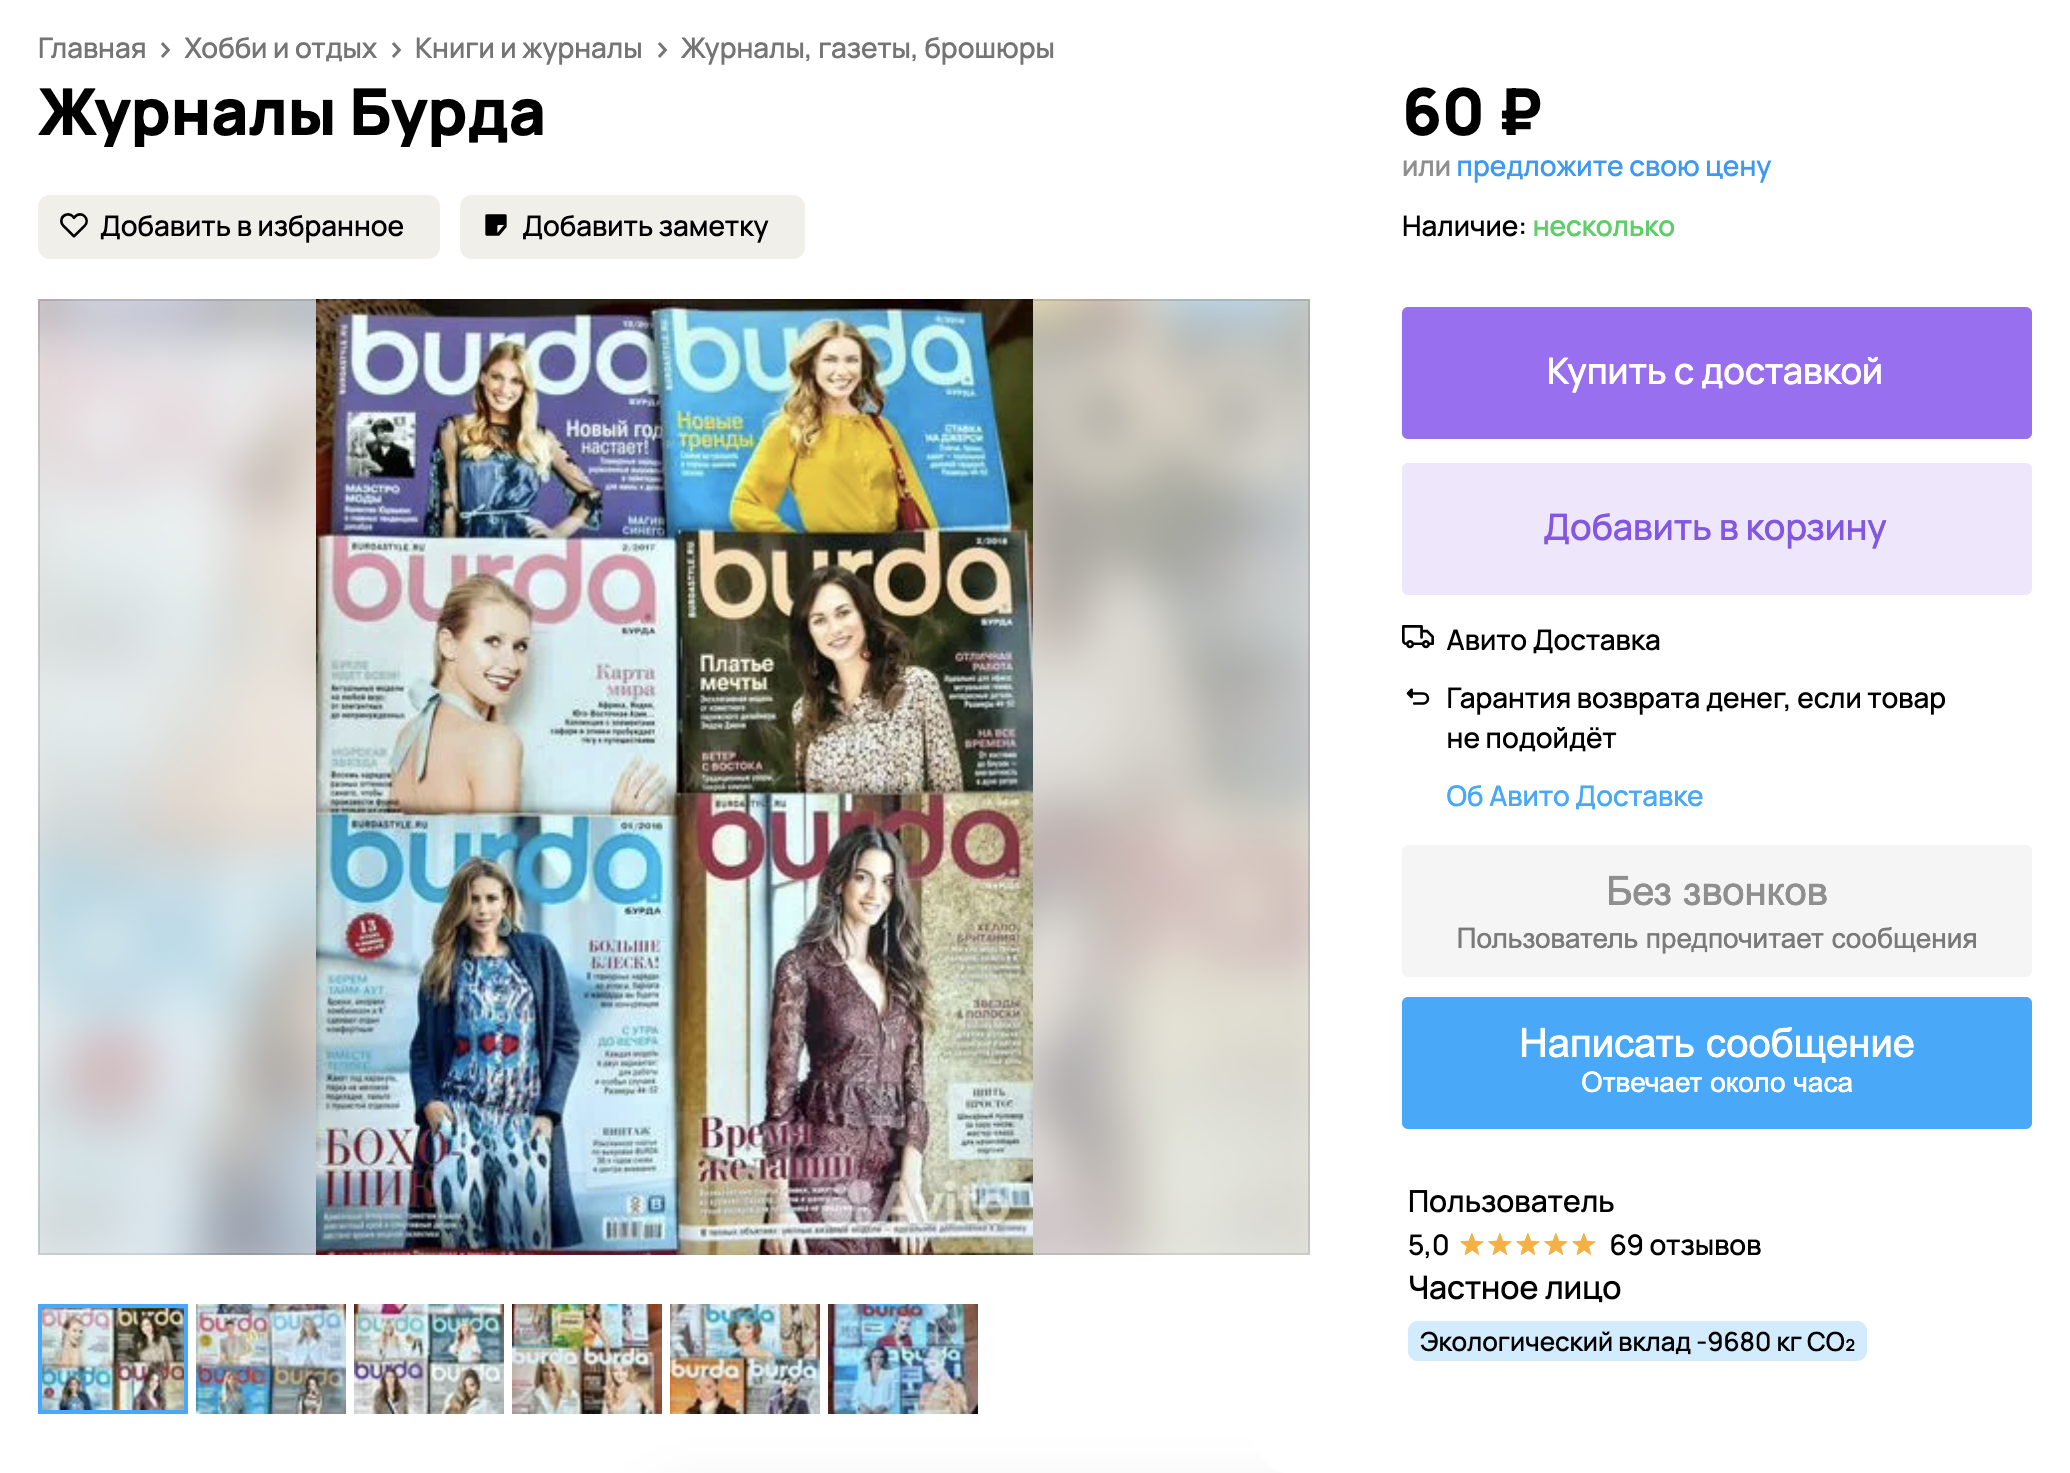 Старые выпуски журналов с выкройками недорого продают на «Авито». Например, в этом объявлении семь выпусков предлагают за 400 ₽. Источник: avito.ru